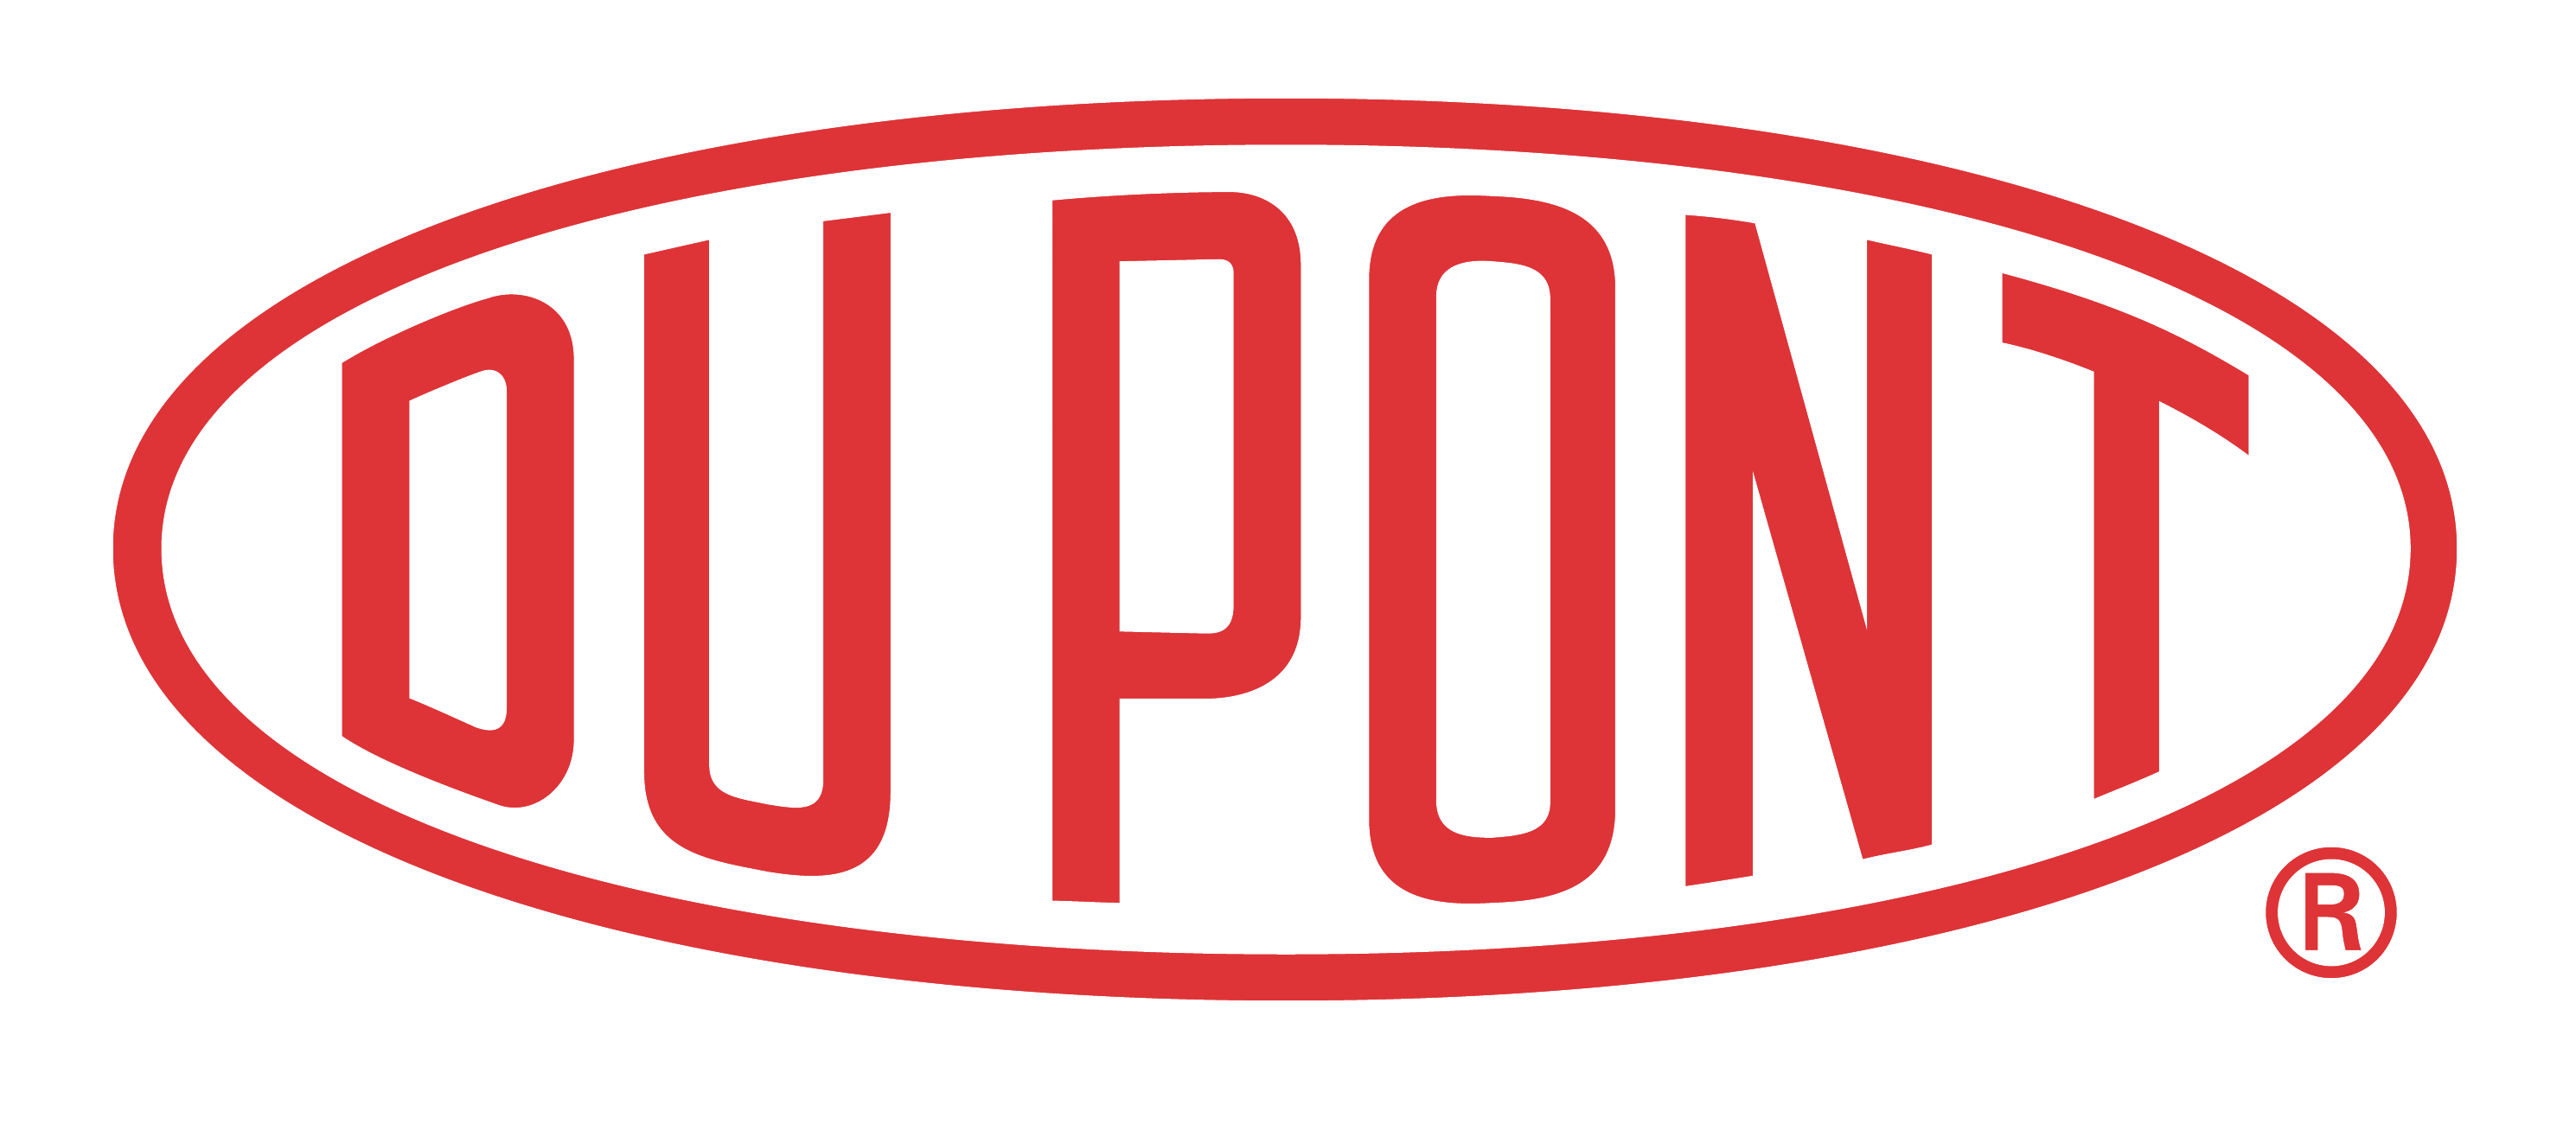 DuPont Logo PNG Image.